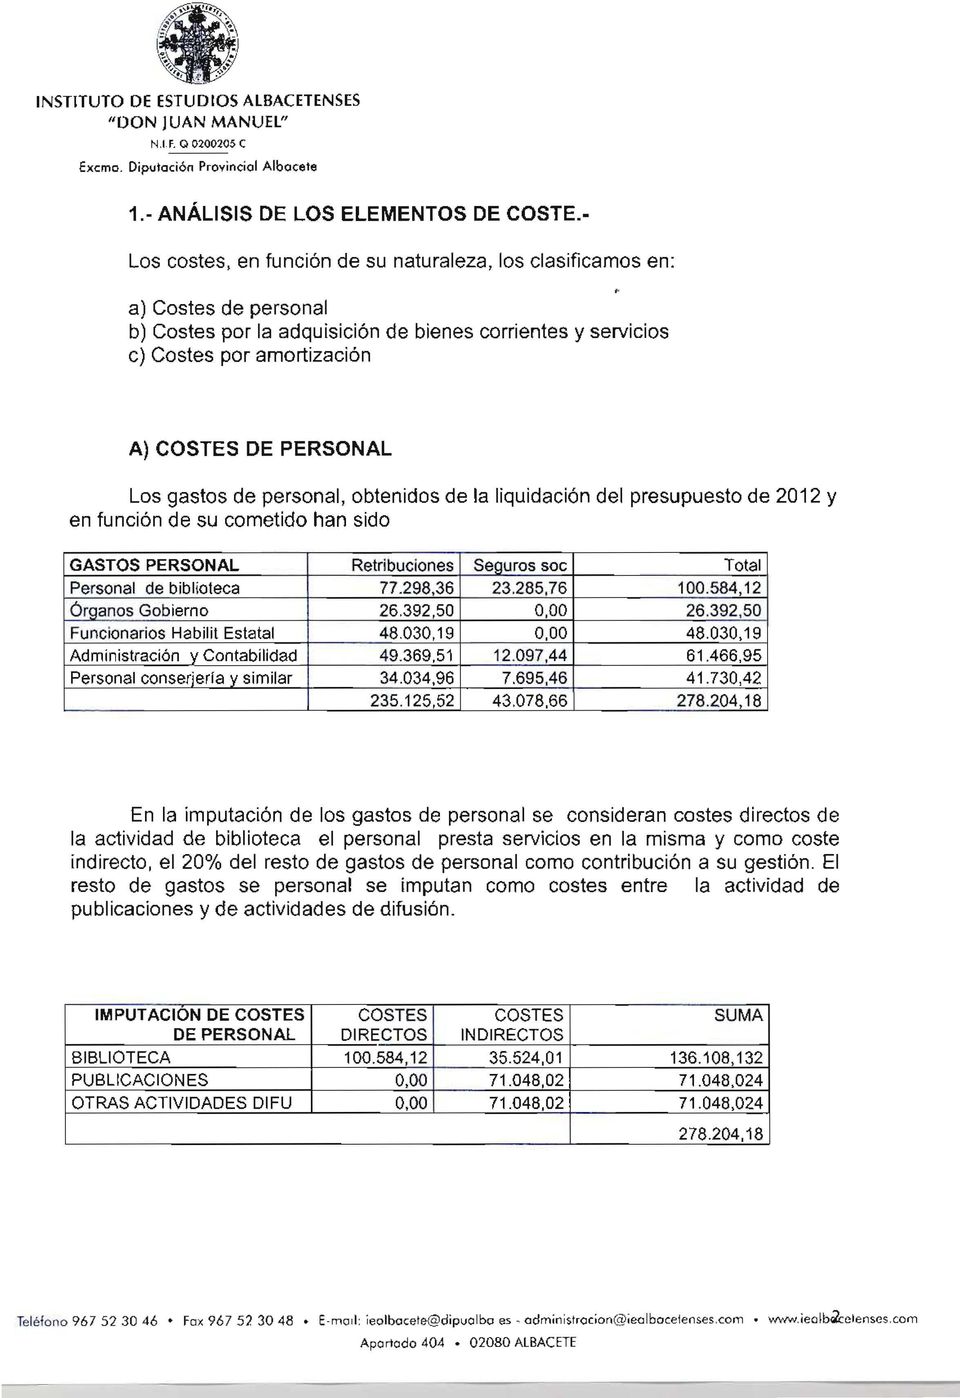 de personal, obtenidos de la liquidación del presupuesto de 2012 y en función de su cometido han sido GASTOS PERSONAL Retribuciones Seauros soc Total Personal de biblioteca 77.298,36 23.285,76 100.